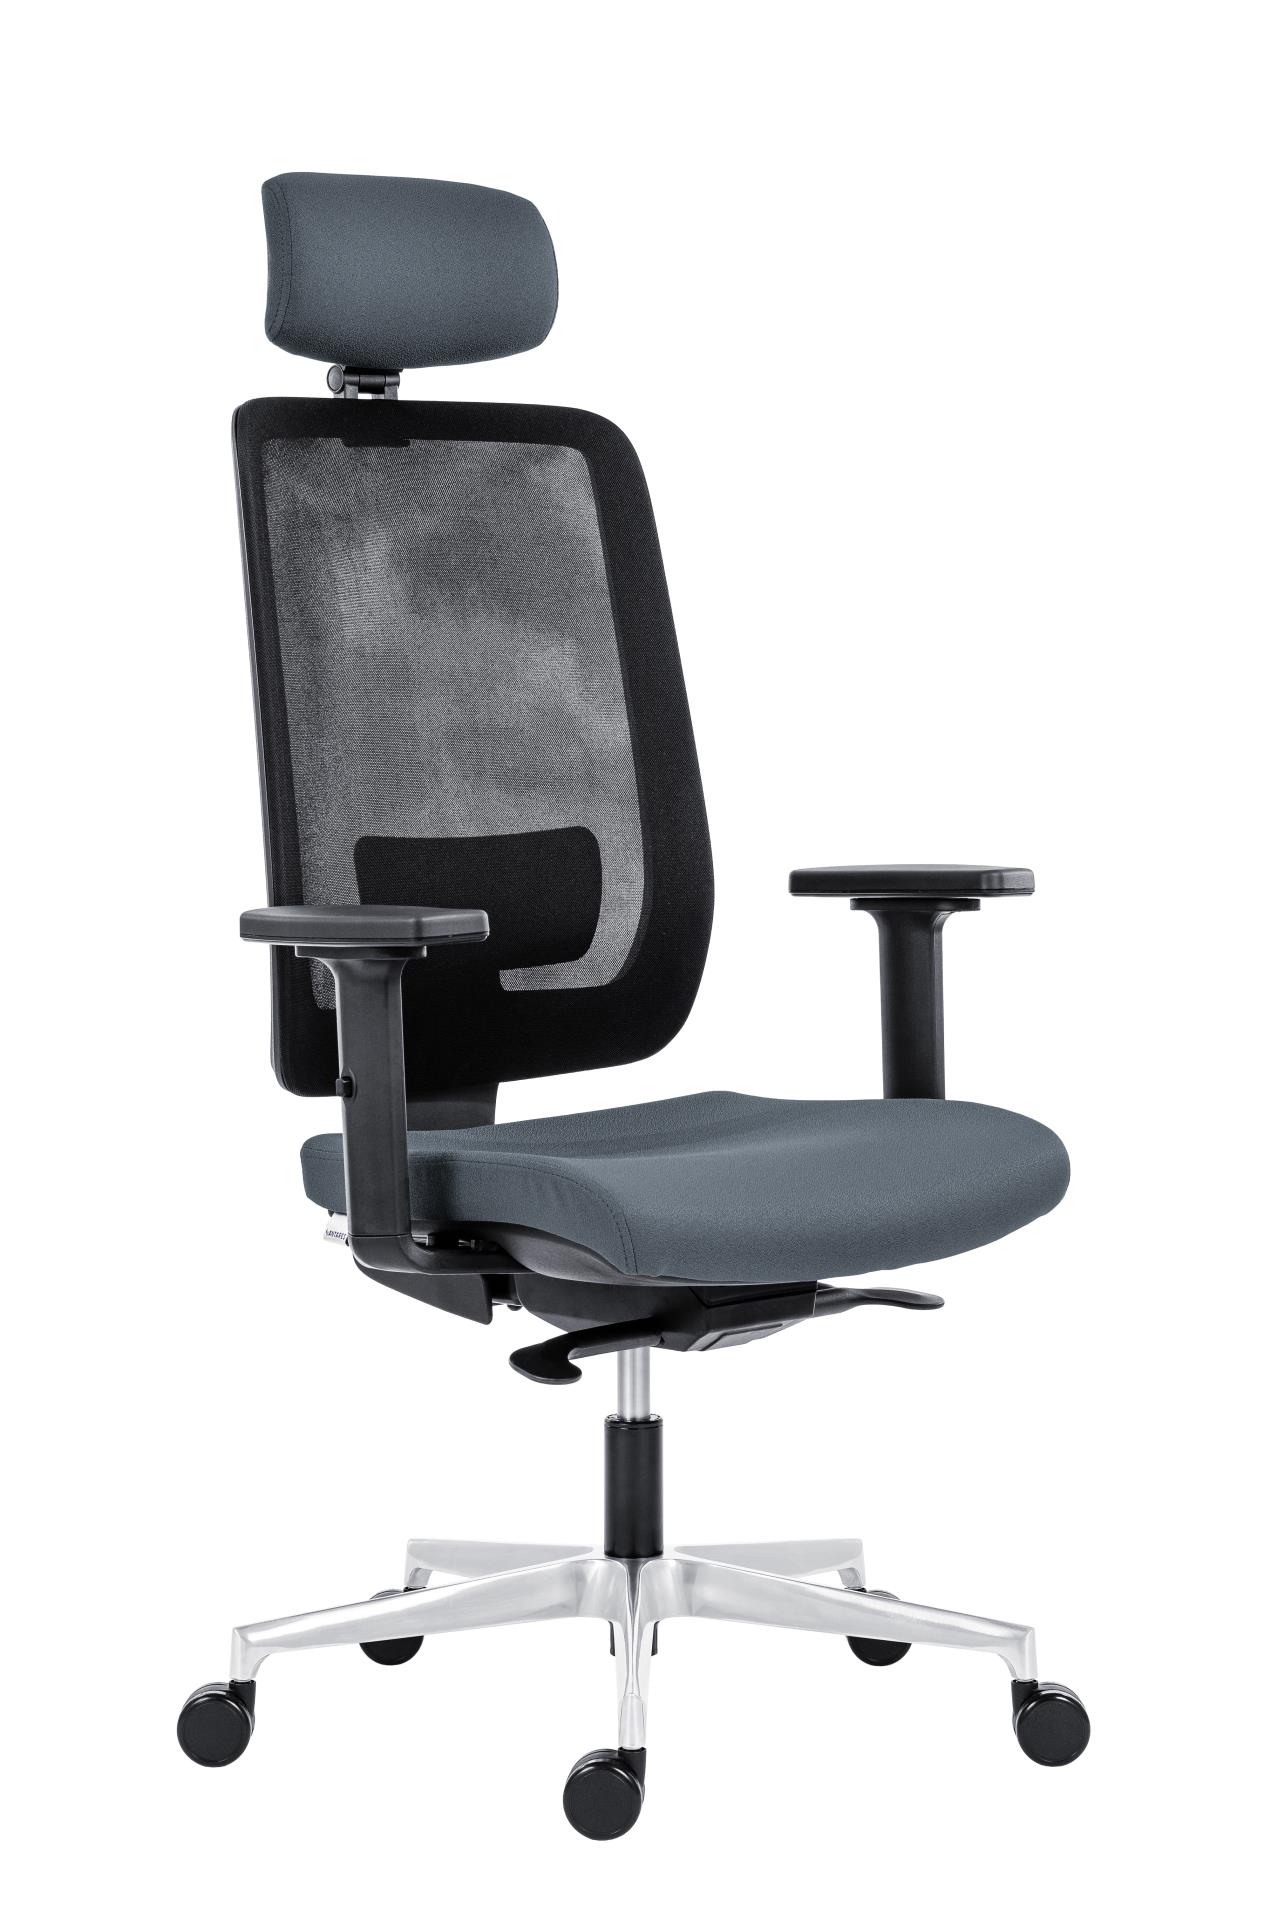 Antares Kancelářská židle Eclipse Net - s podhlavníkem, synchronní, šedá